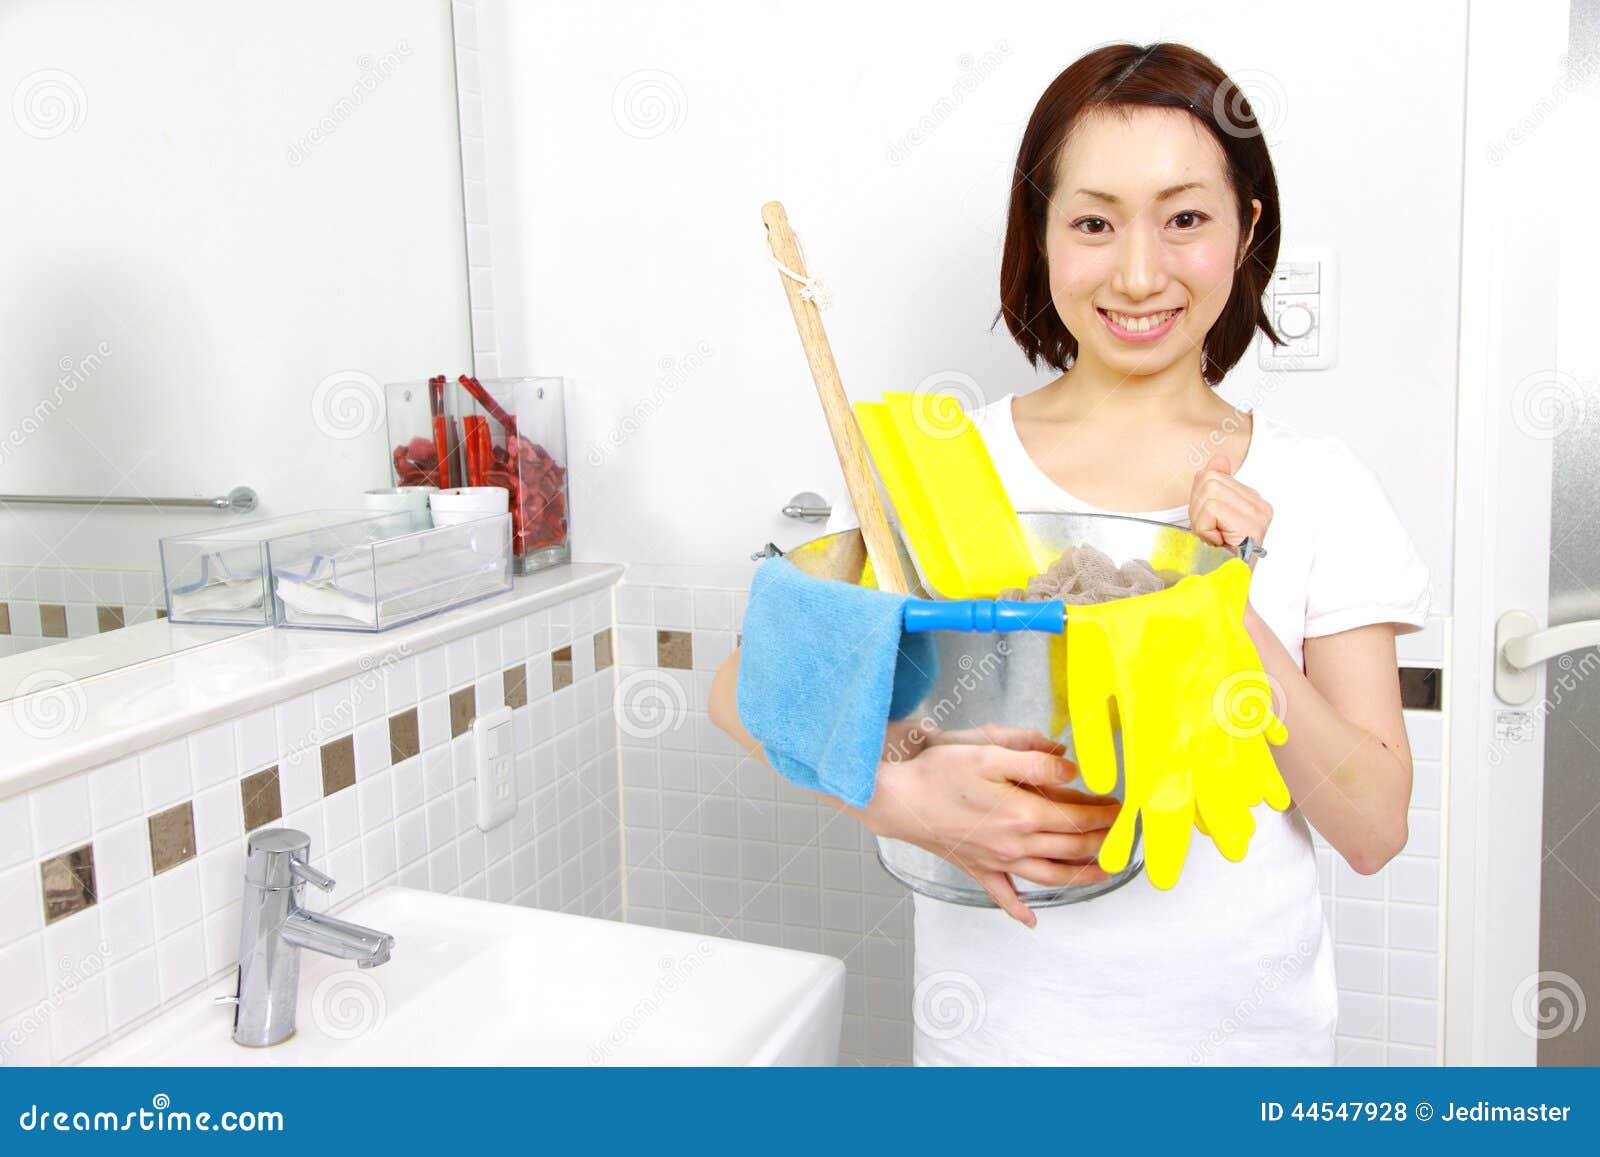 К чему снится чистая ванна. Чистая ванна. Идеальная чистота в ванной. Женщина протирает ванную фото. Азиатка чистит ванну.